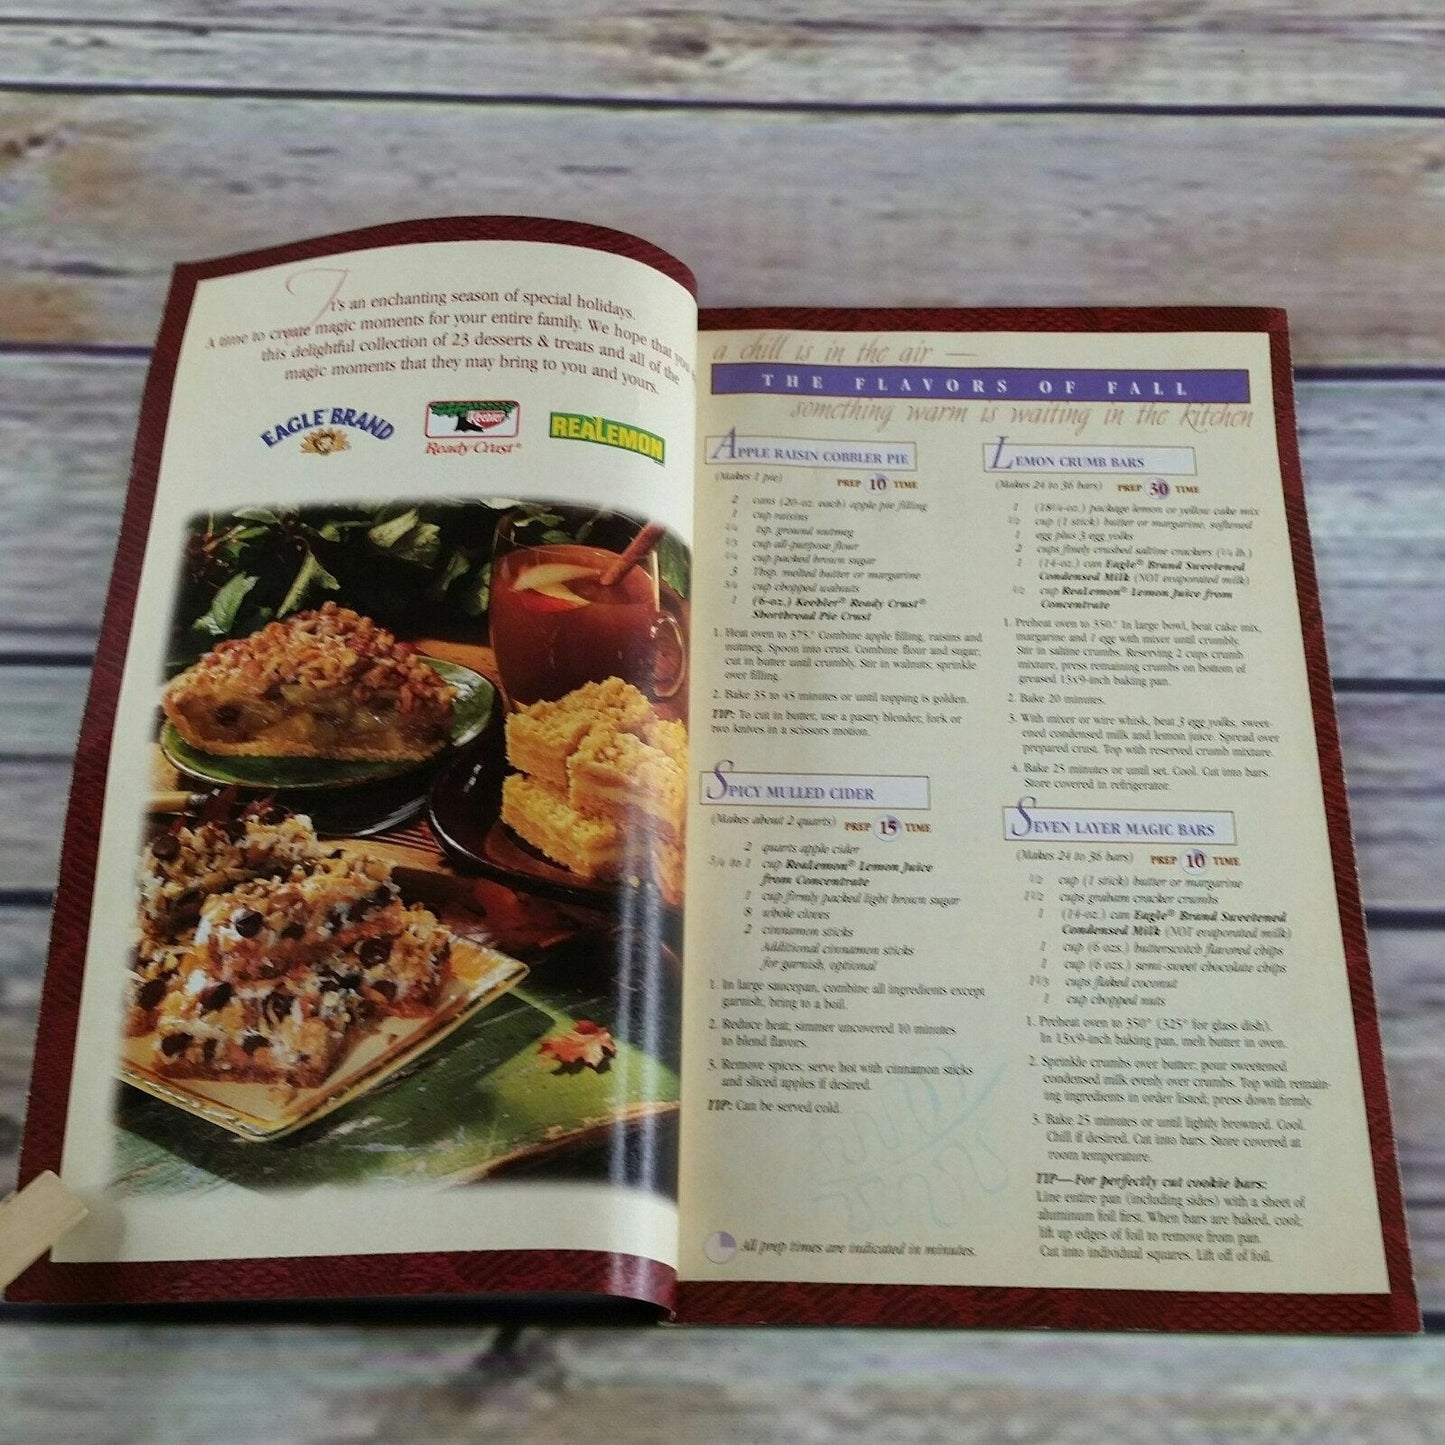 Vintage Desserts Cookbook 23 Dessert Recipes Eagle Family Foods 1998 Promo Paperback Booklet ReaLemon Keebler Ready Crust